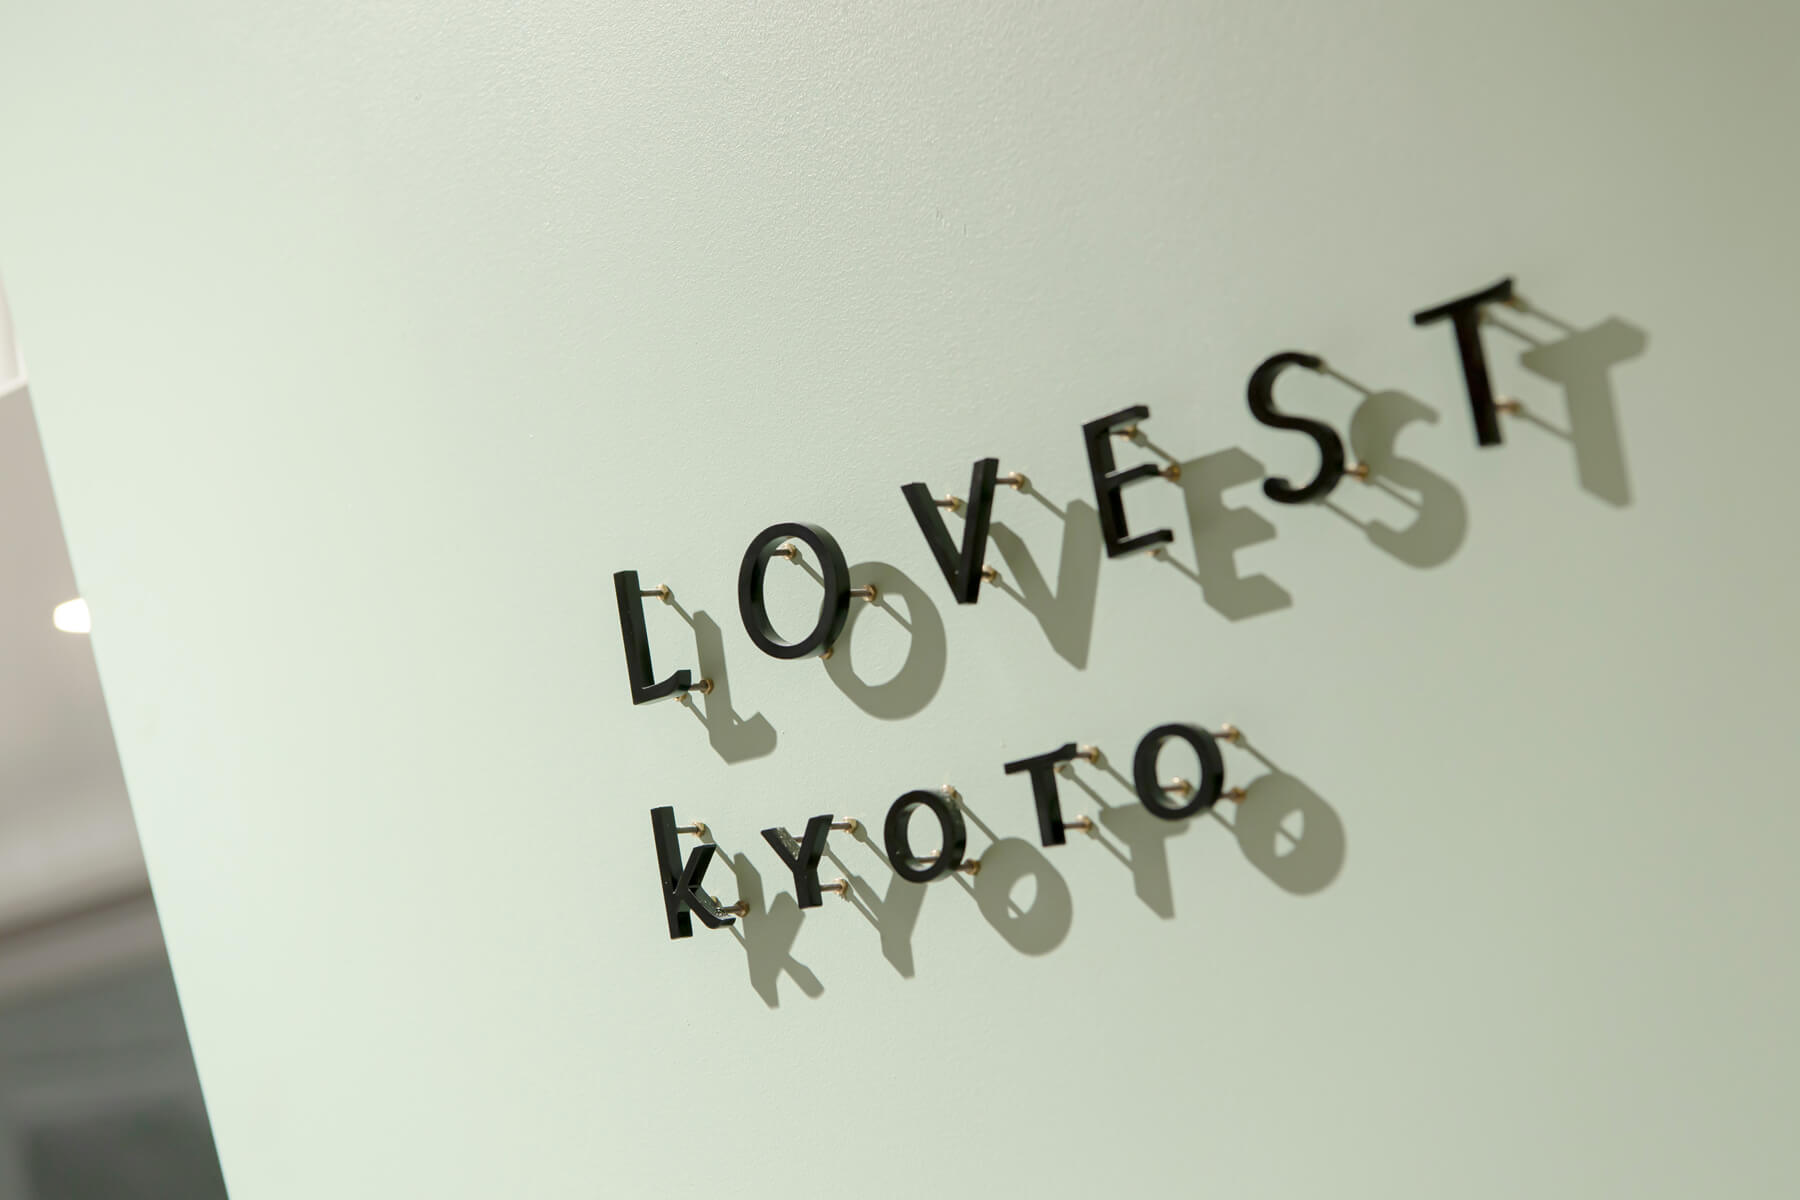 LOVEST KYOTO／Kyoto